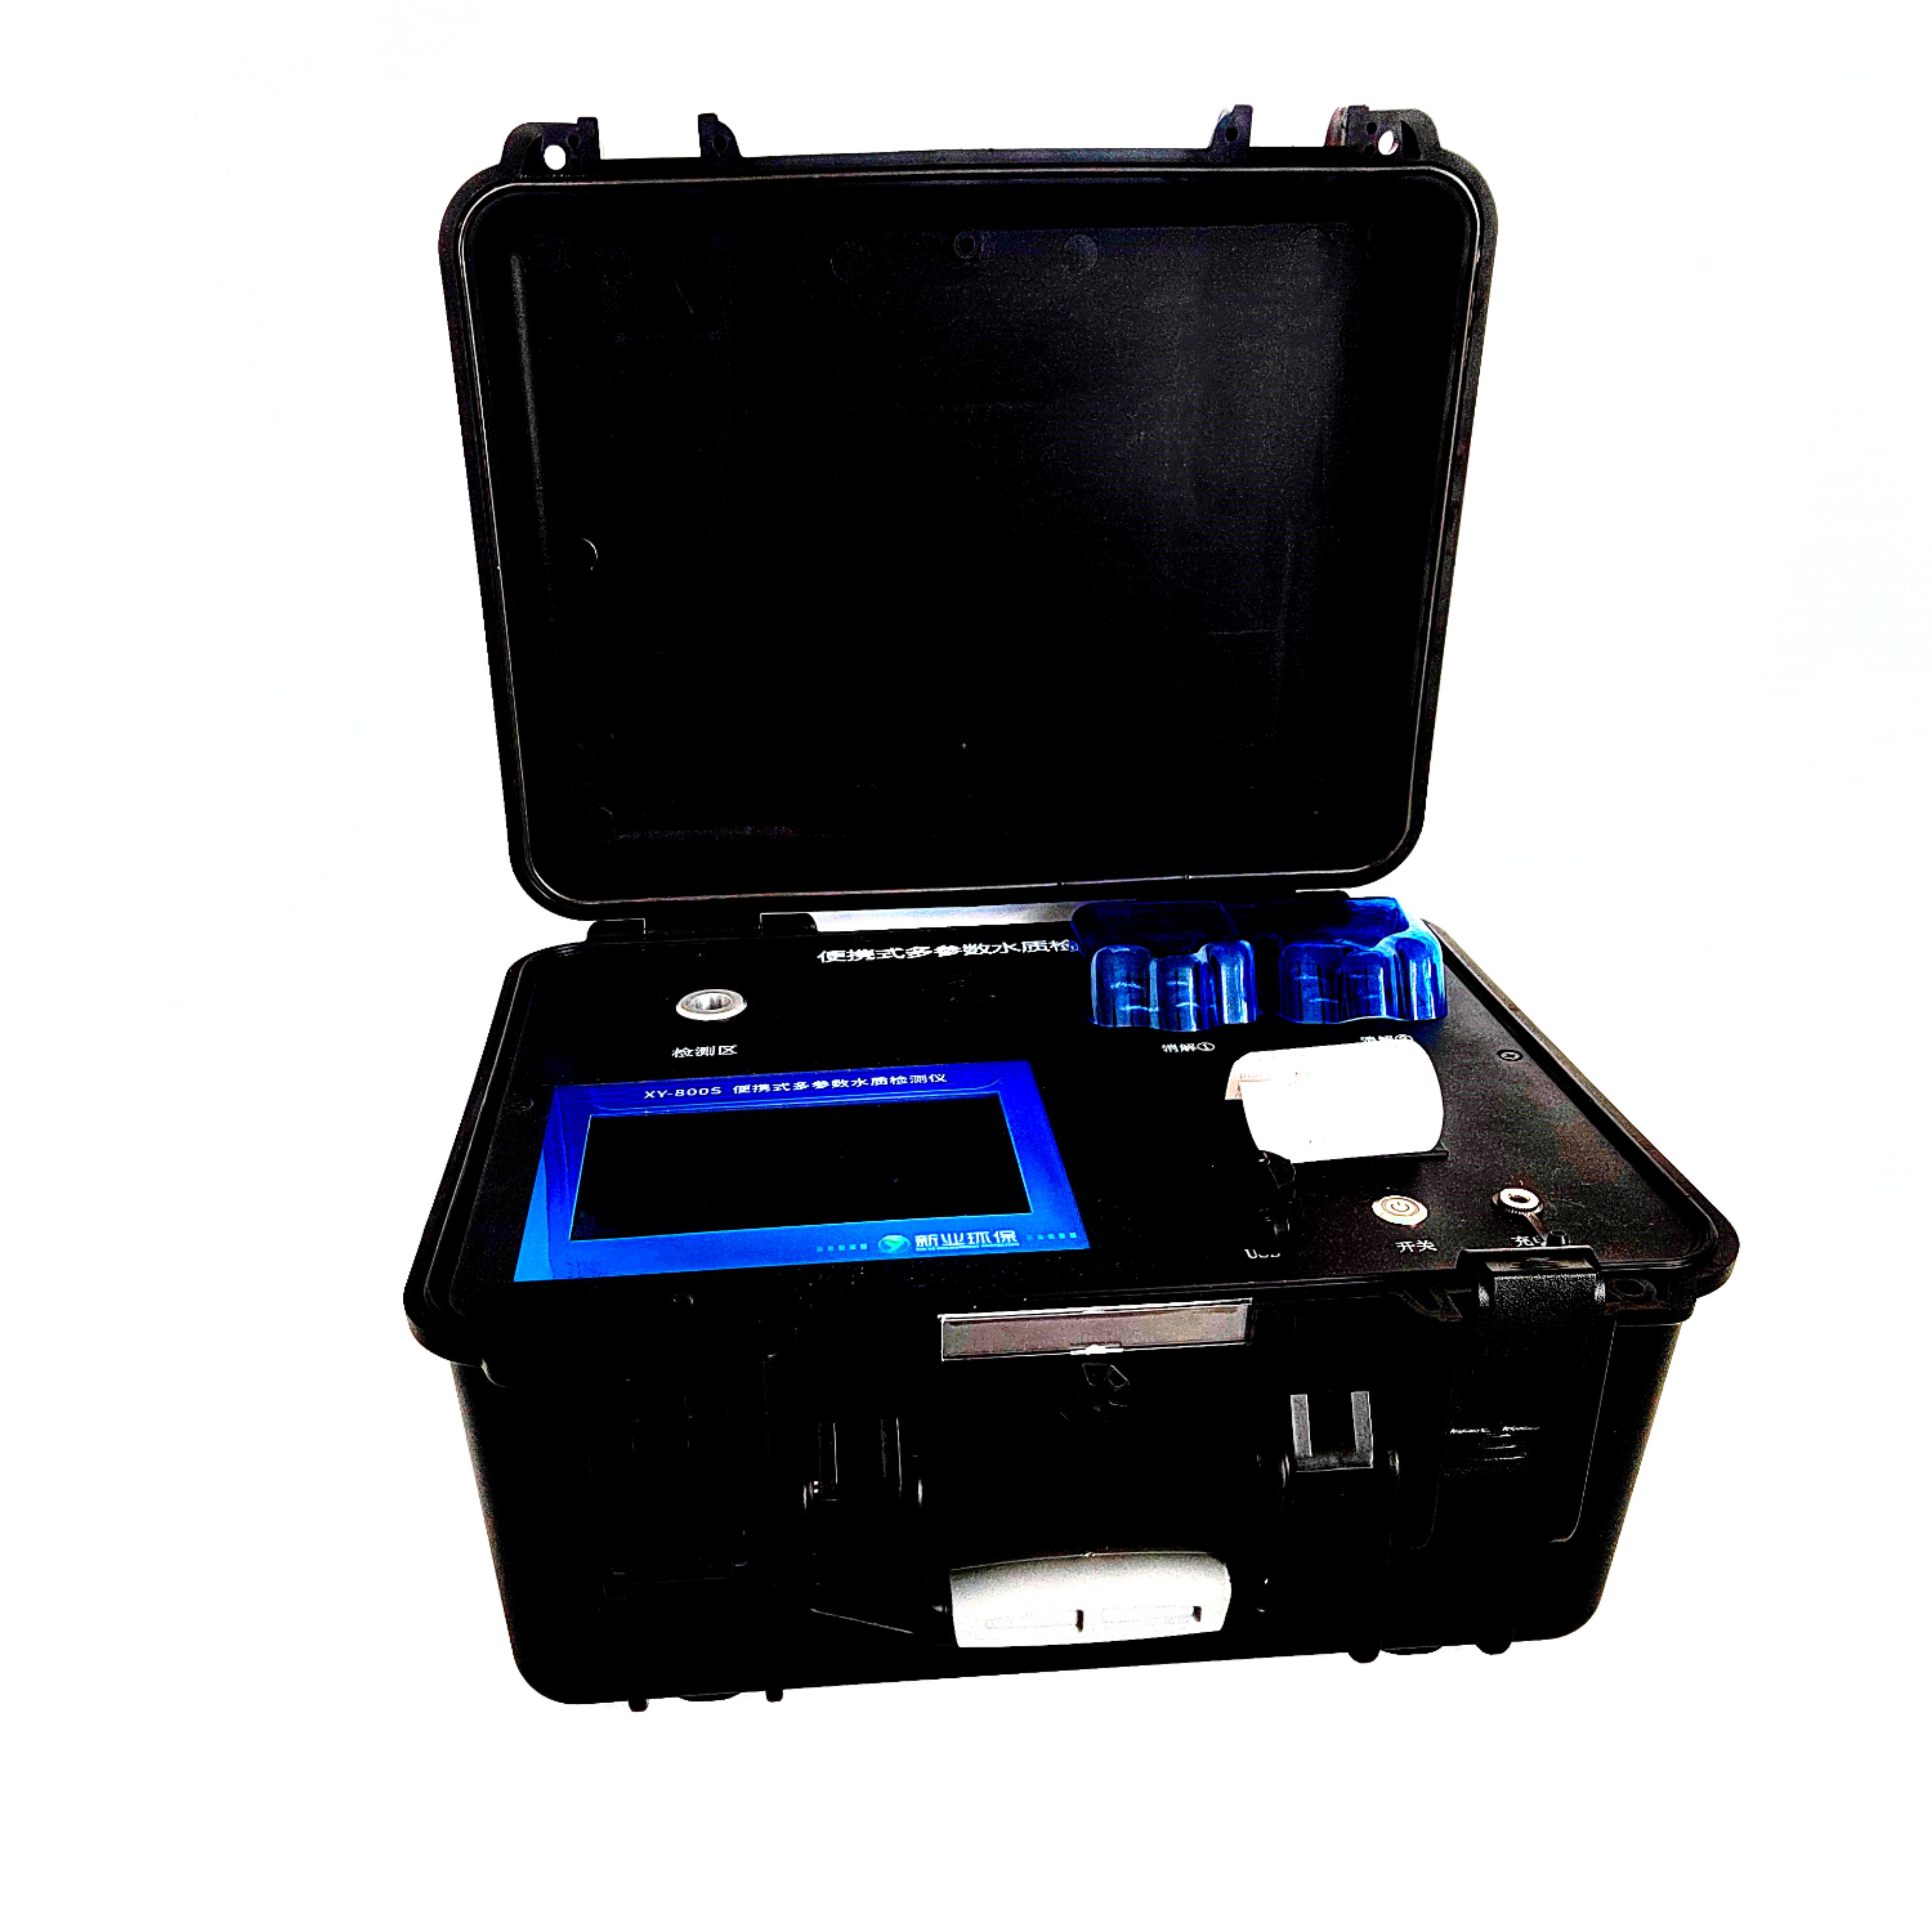 XY-800s 一体化便携水质多参数检测设备